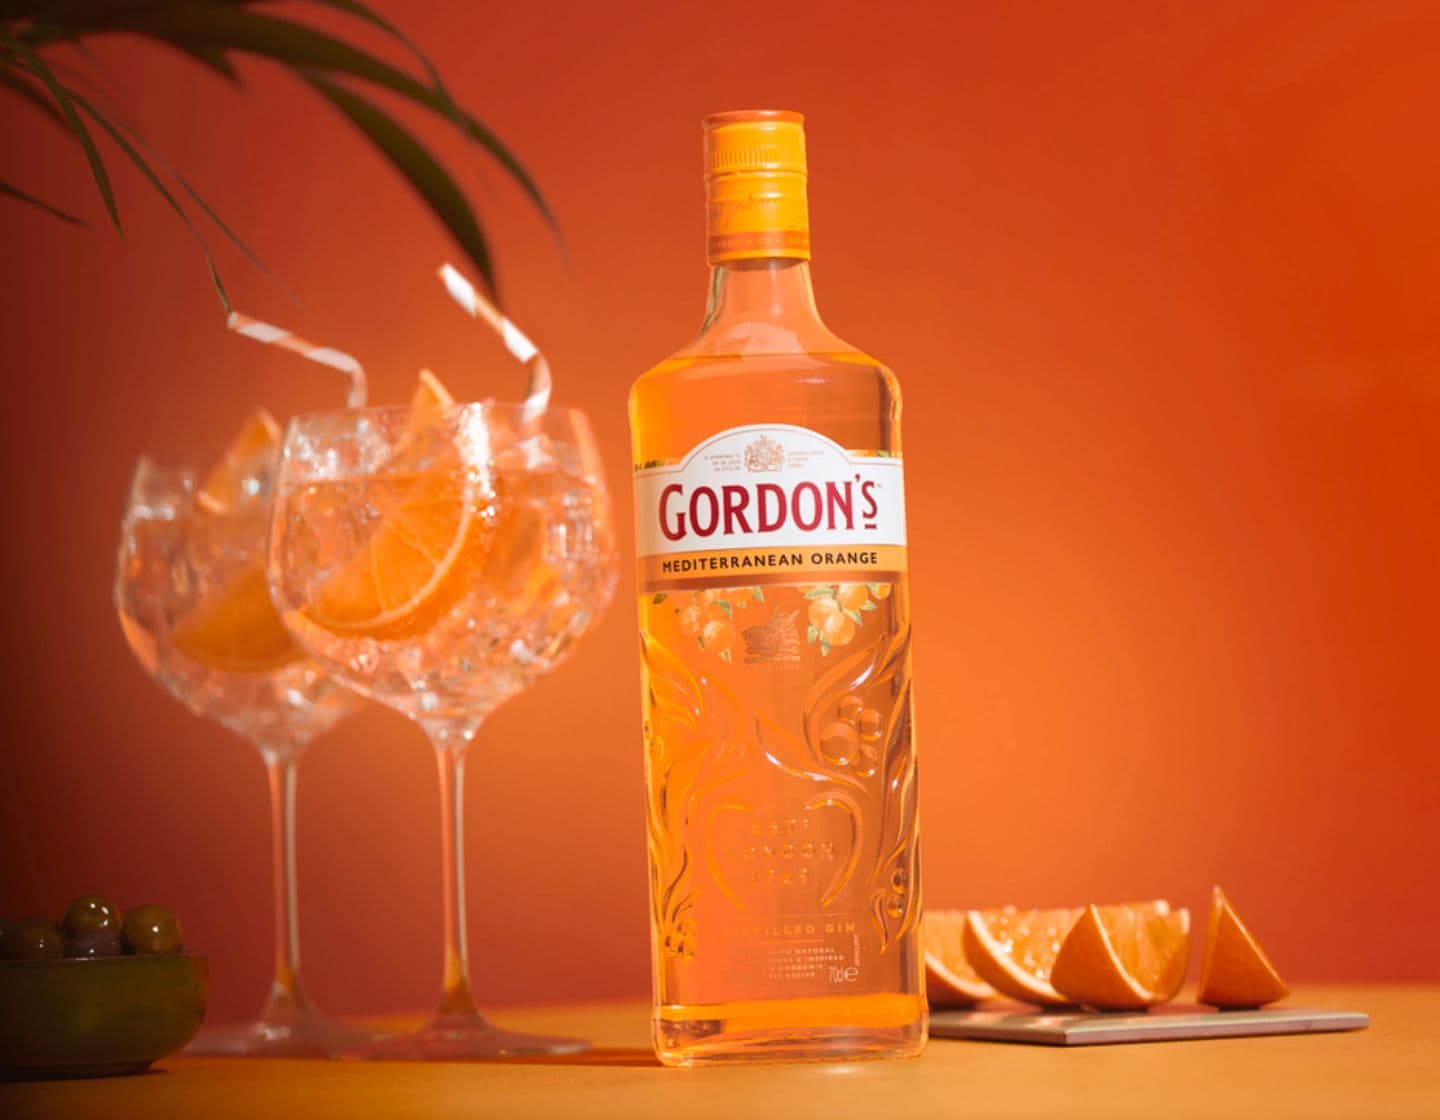 Garrafa de Gordon's Mediterranean gin ao lado de dois copos de G&T em um fundo laranja.